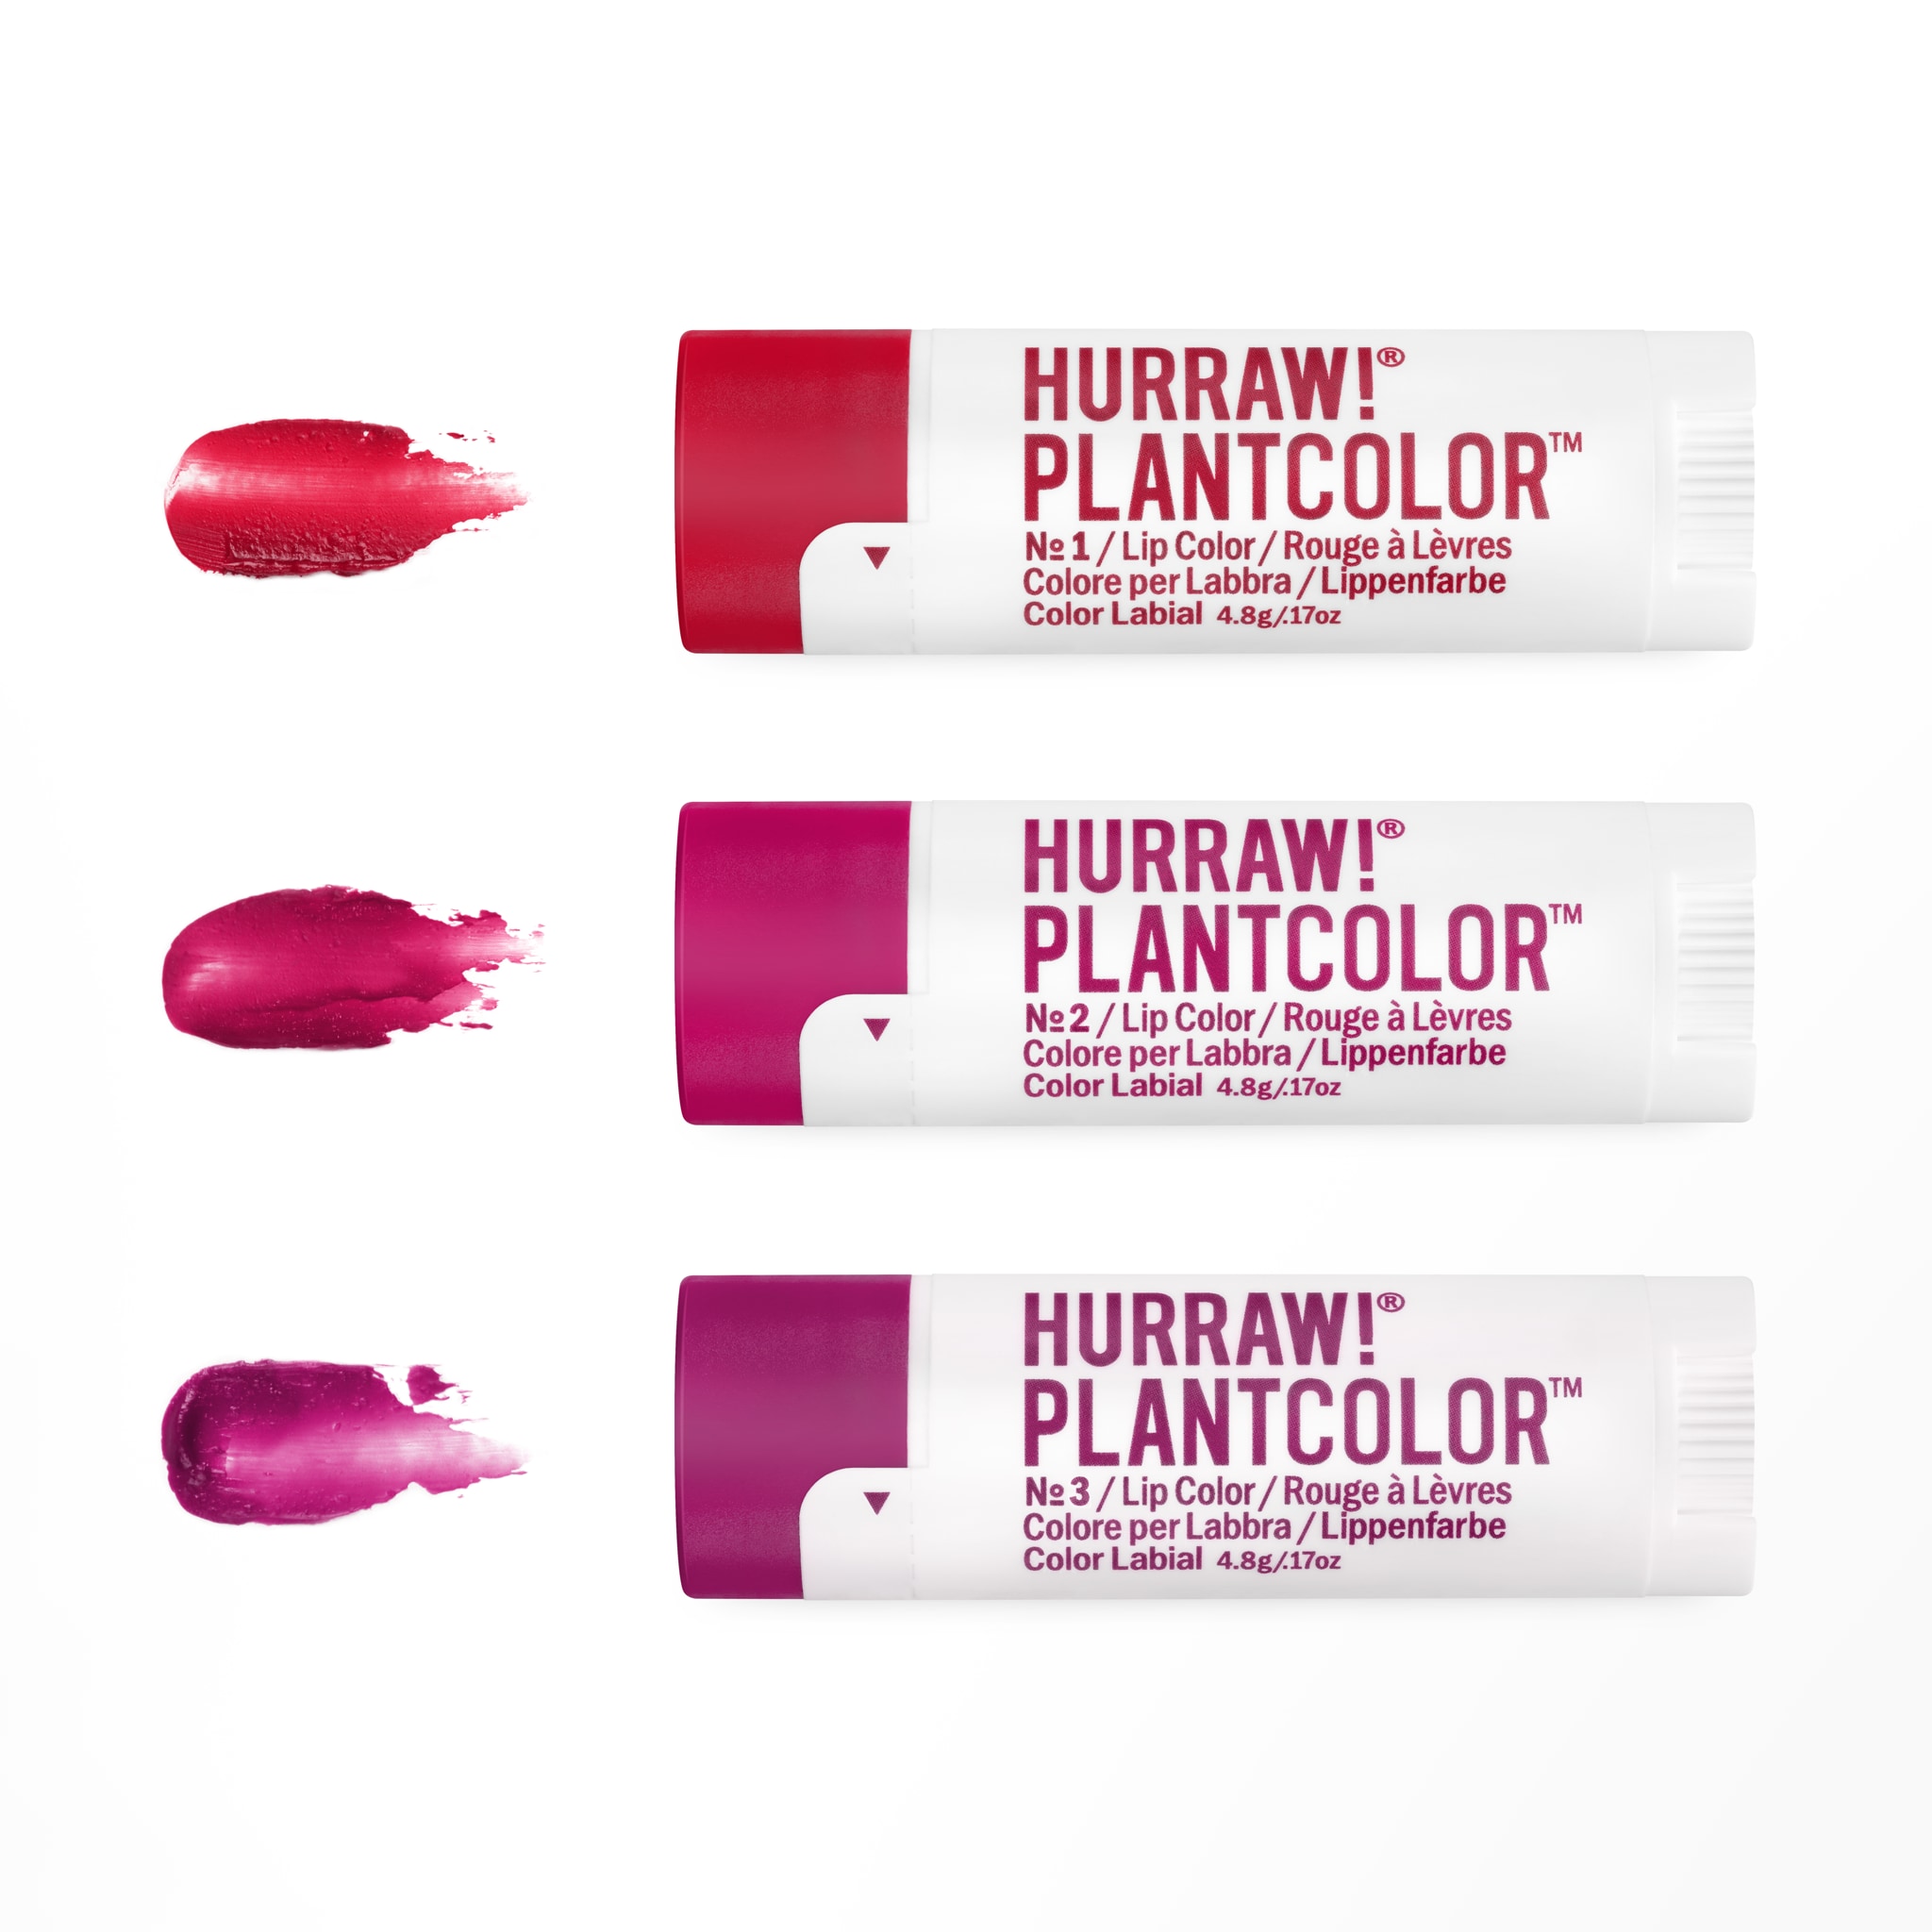 Hurraw PLANTCOLOR Lip Color No2 4,8g